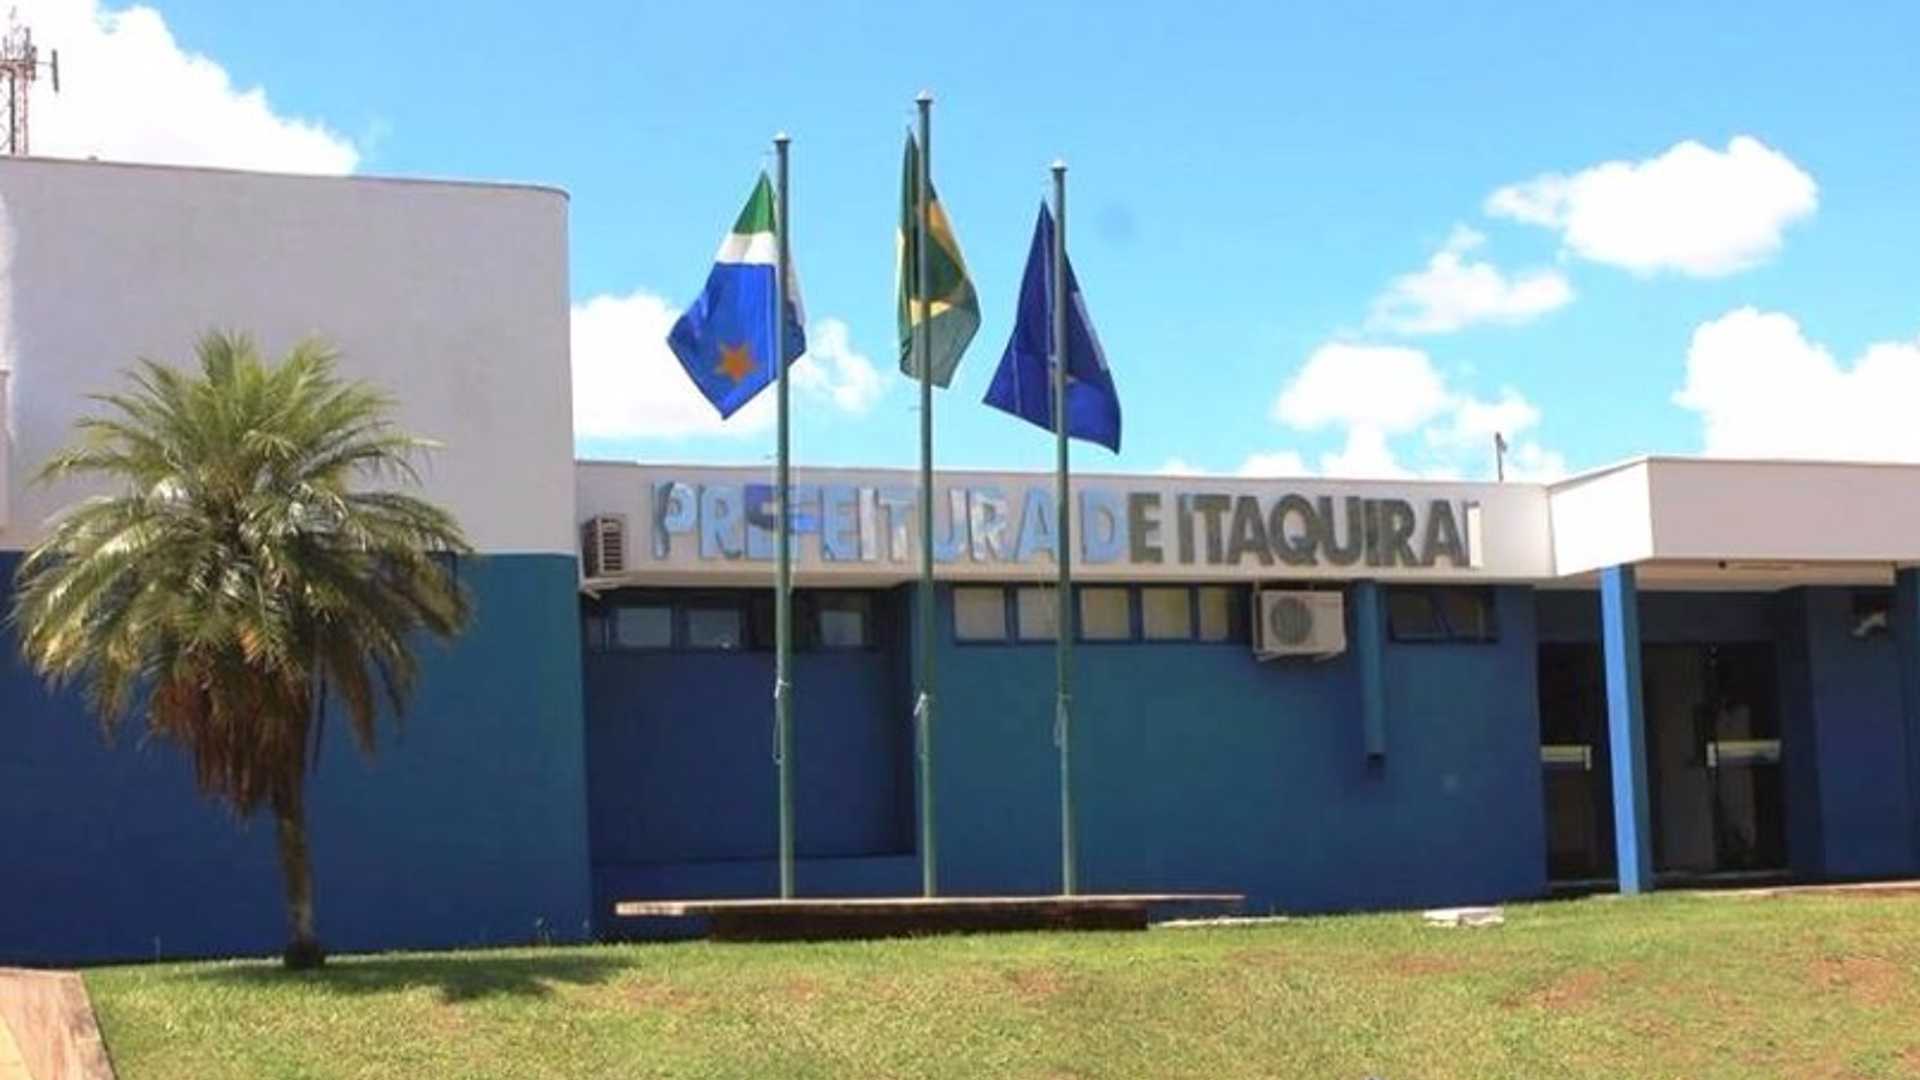 Com 74 vagas, prefeitura de Itaquiraí abre processo seletivo para profissionais da educação